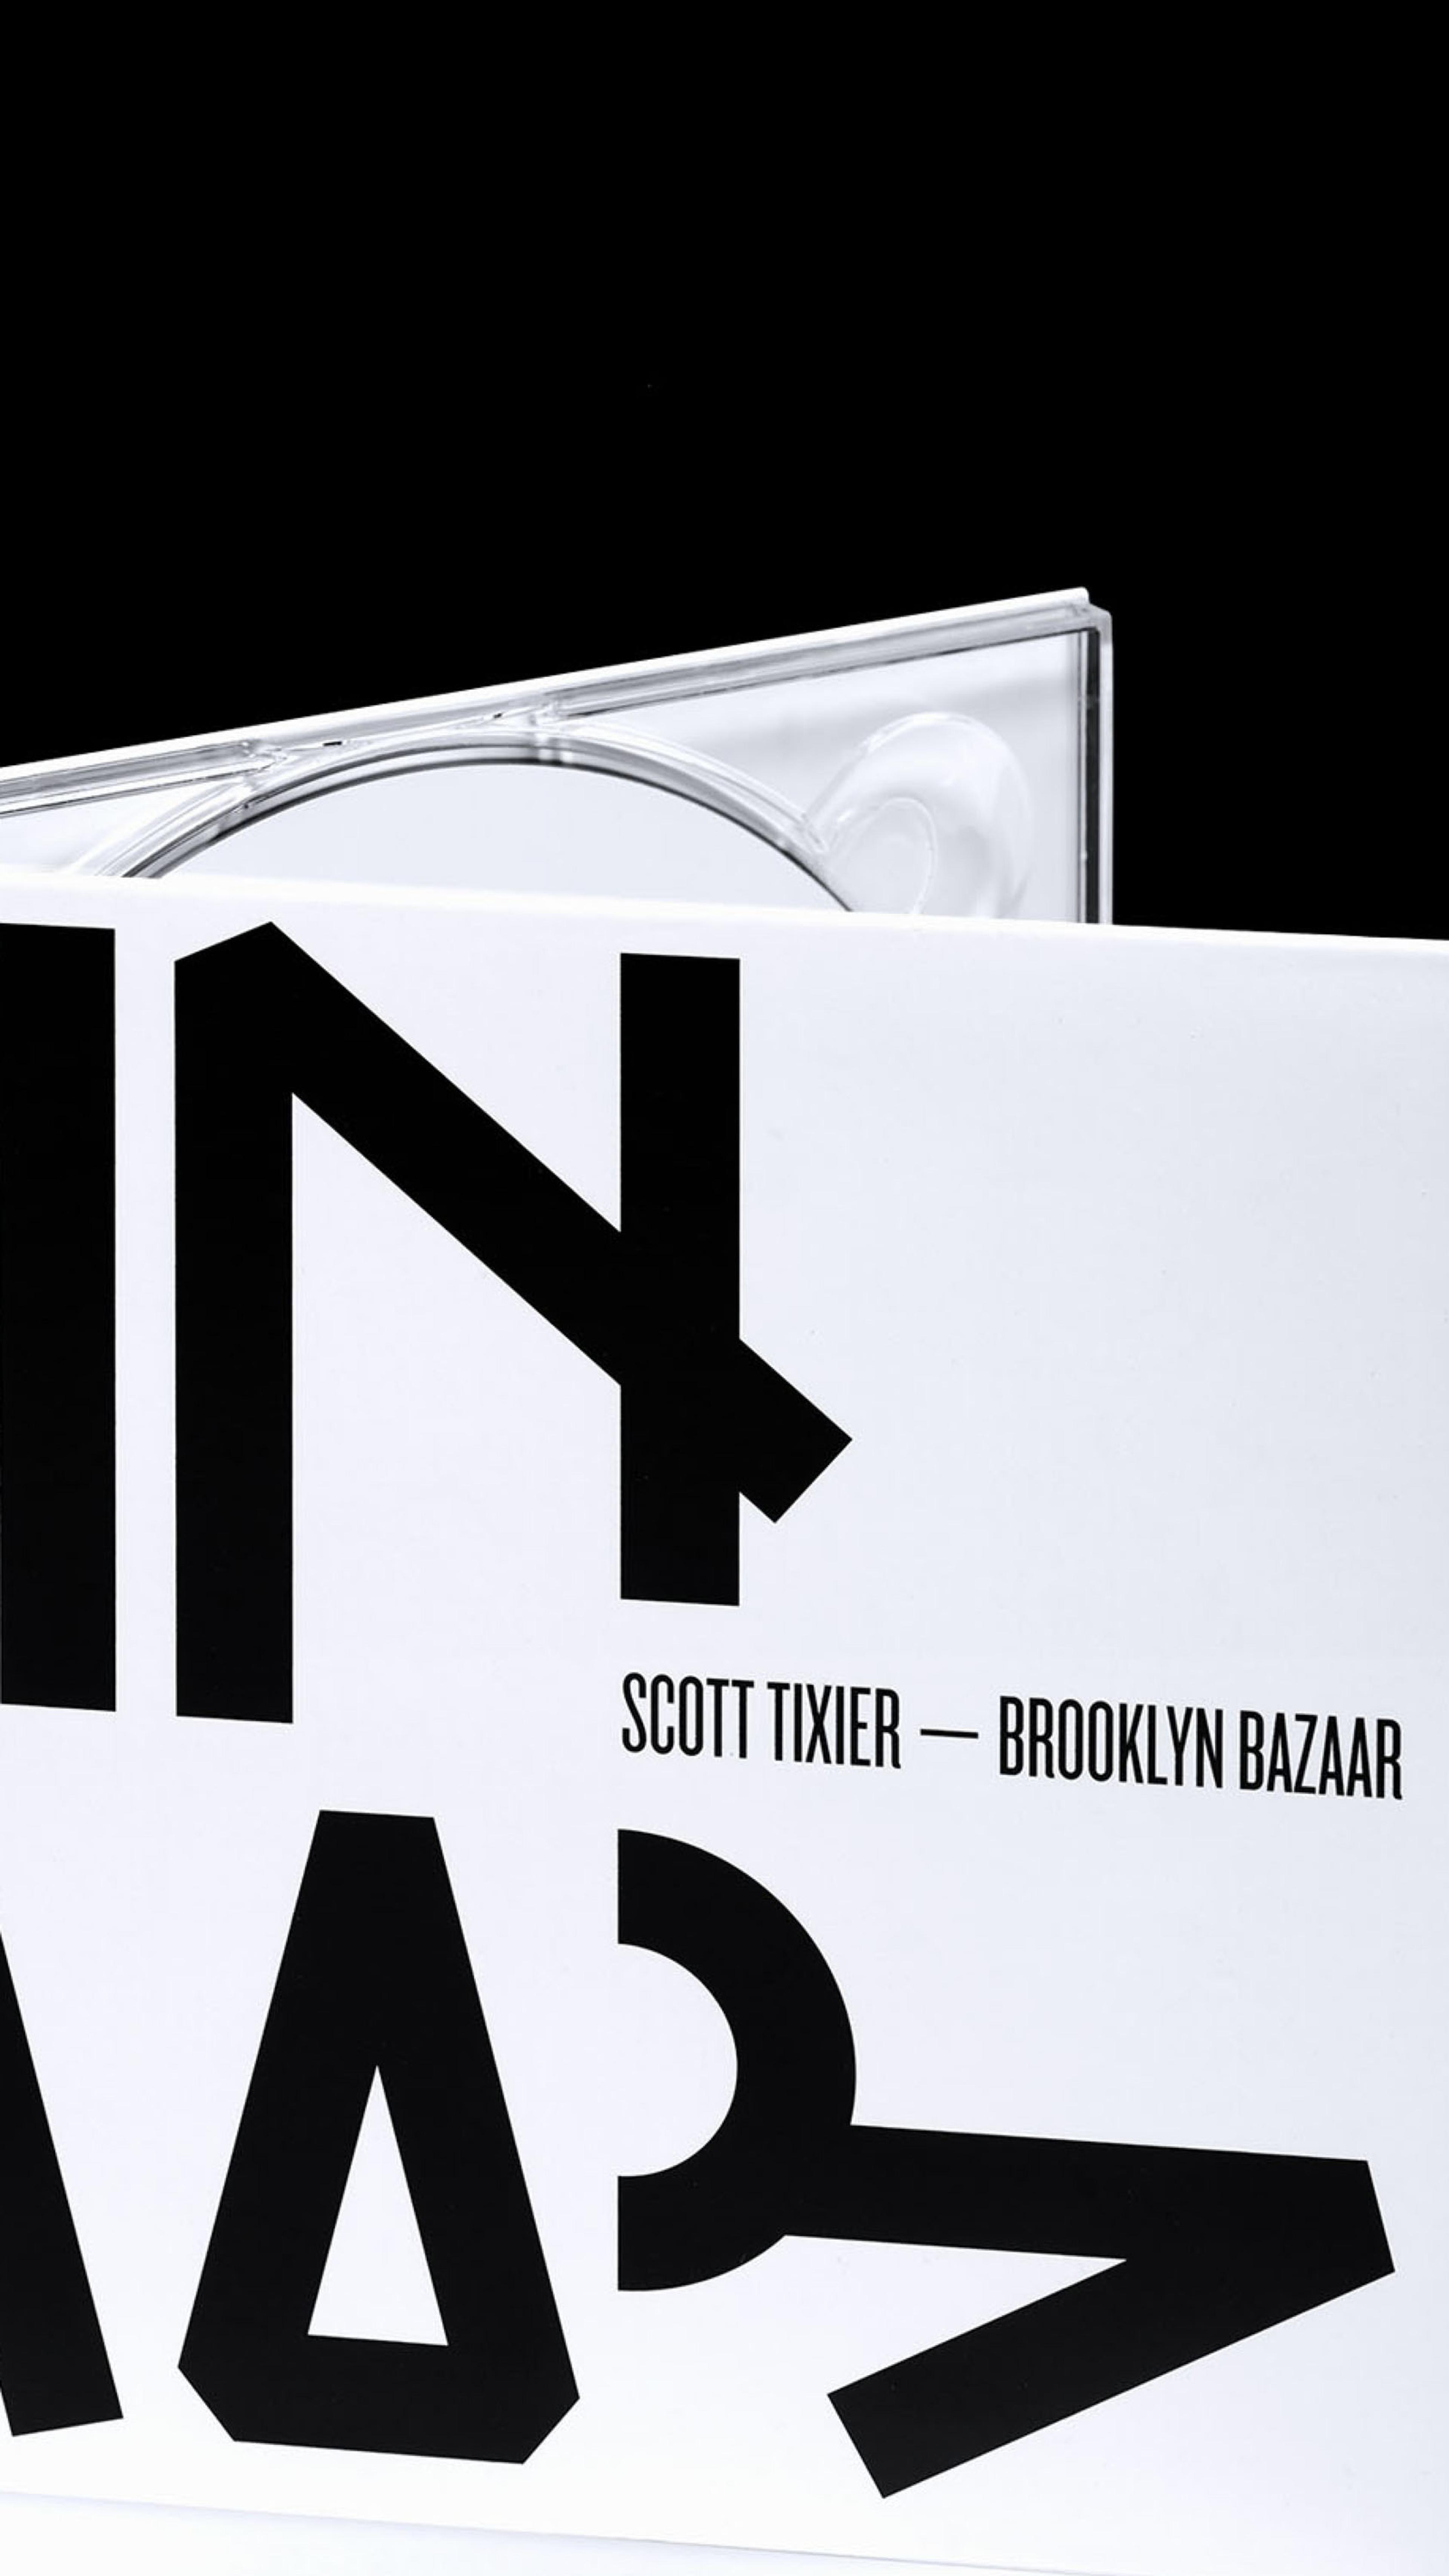 Brooklyn Bazaar | Studio Haberfeld